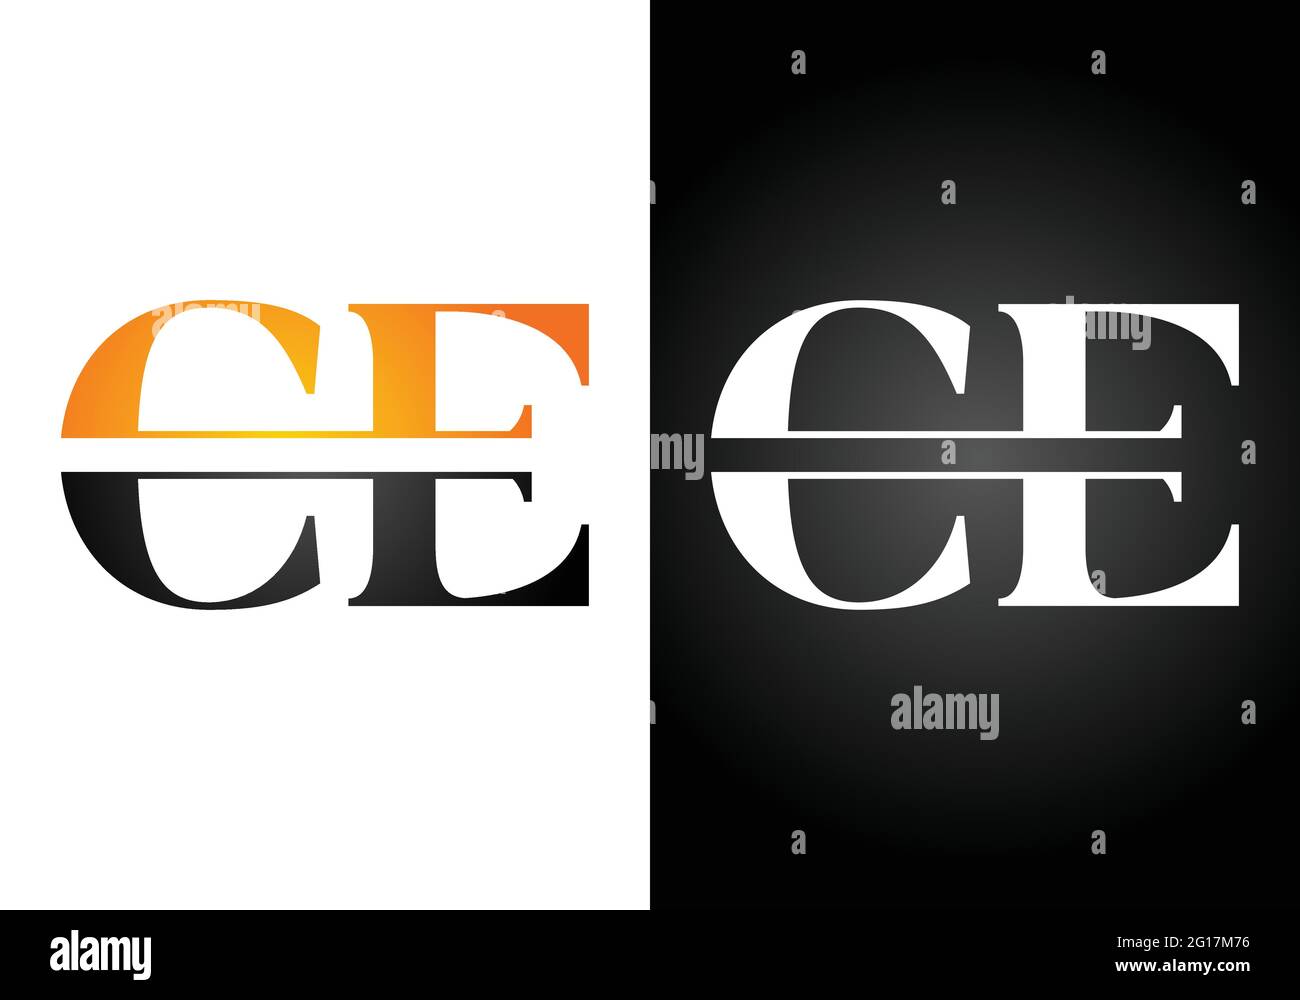 Initial Monogram Letter C E Logo Design Vektor-Vorlage. C E Letter Logo Design Stock Vektor